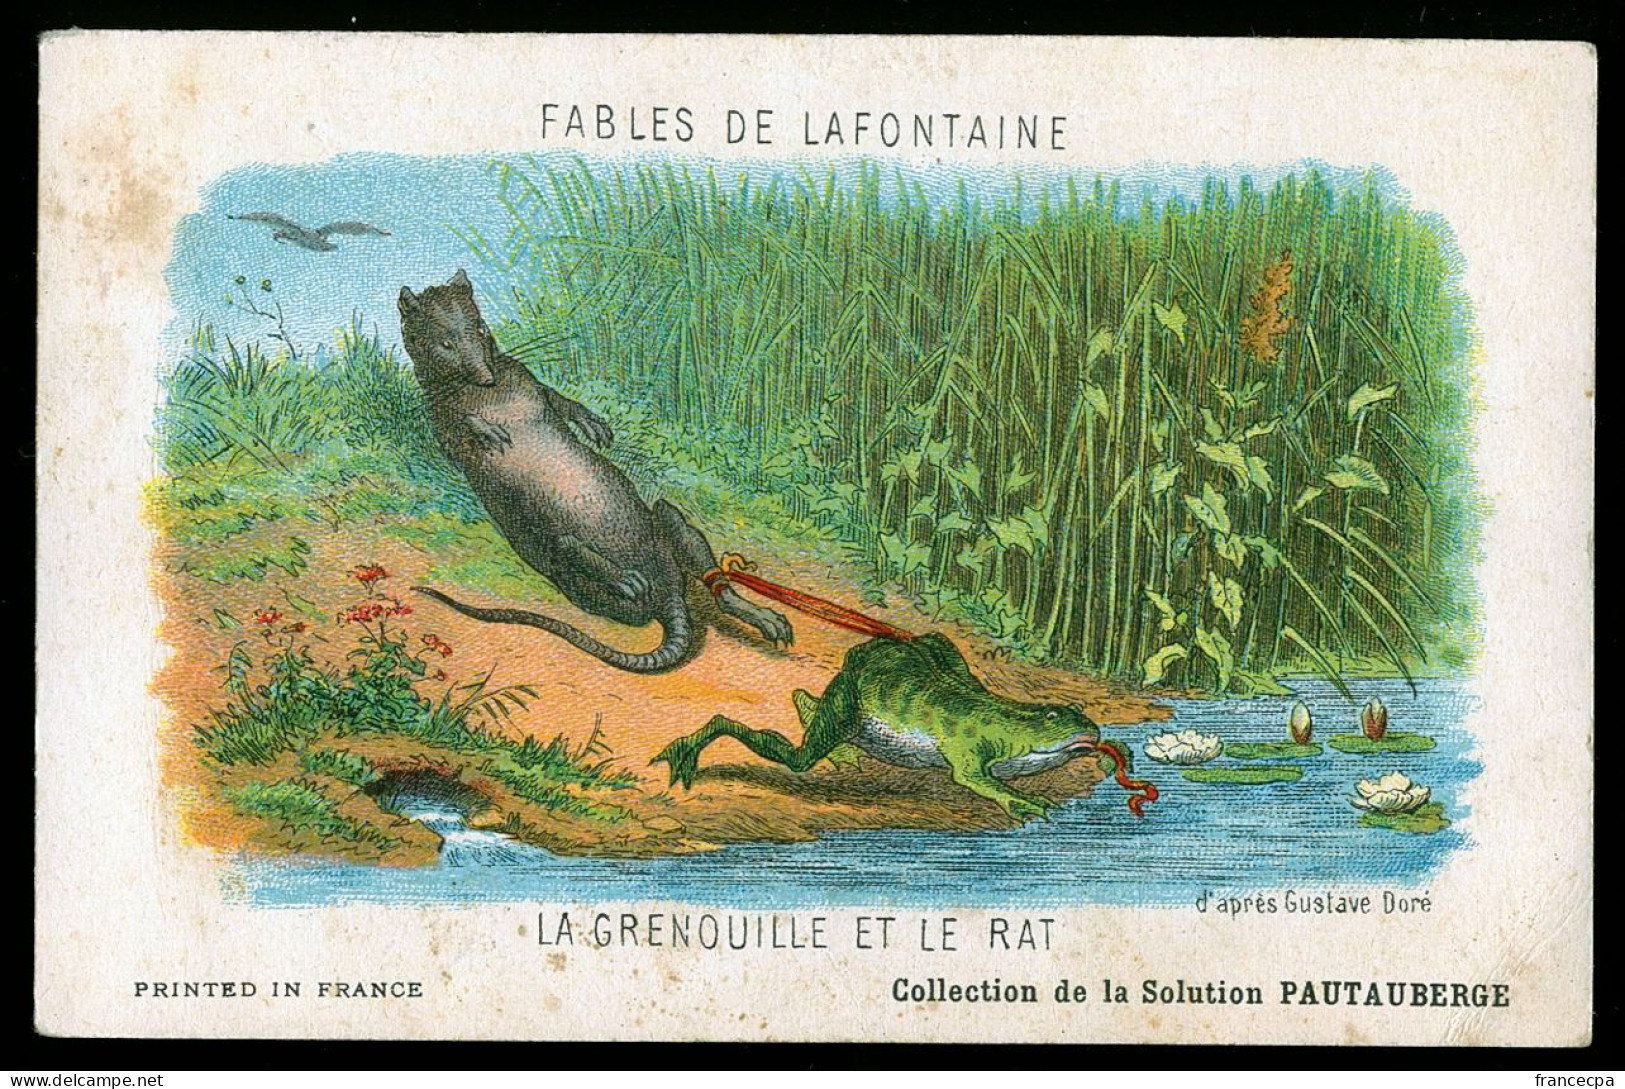 14414 - FABLES DE LA FONTAINE - LA GRENOUILLE ET LE RAT - Fairy Tales, Popular Stories & Legends